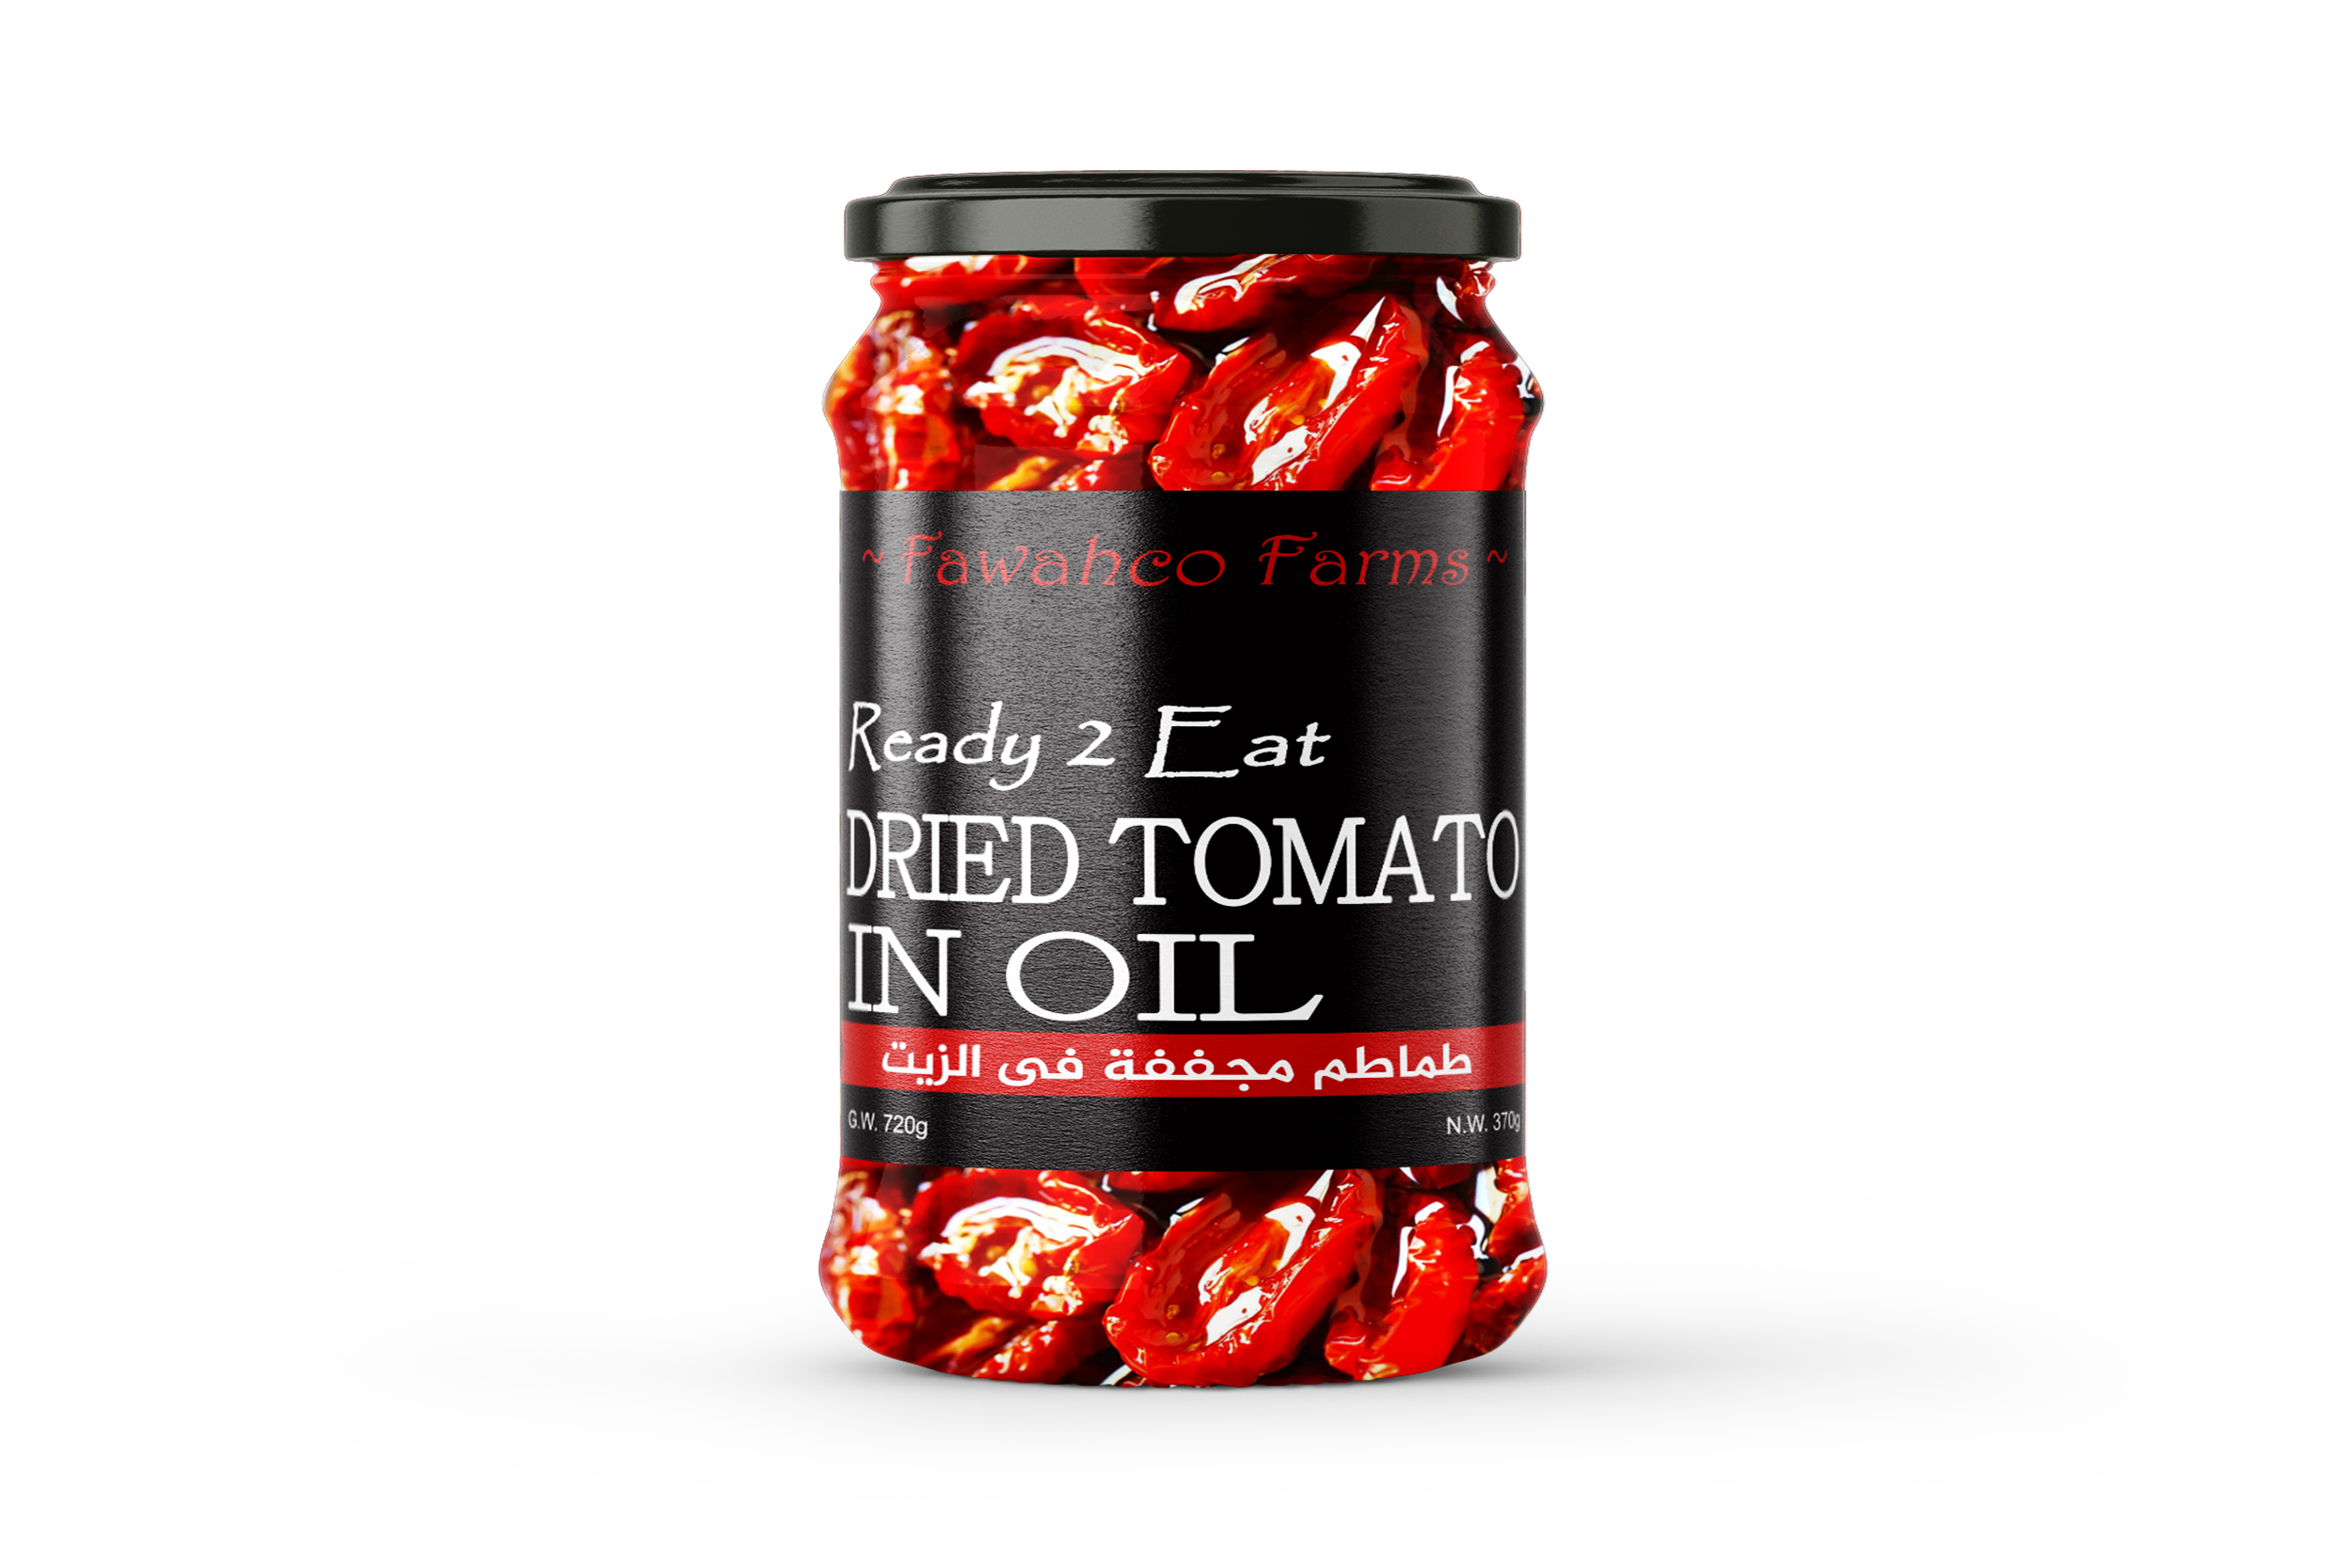 Dries Tomato in Oil